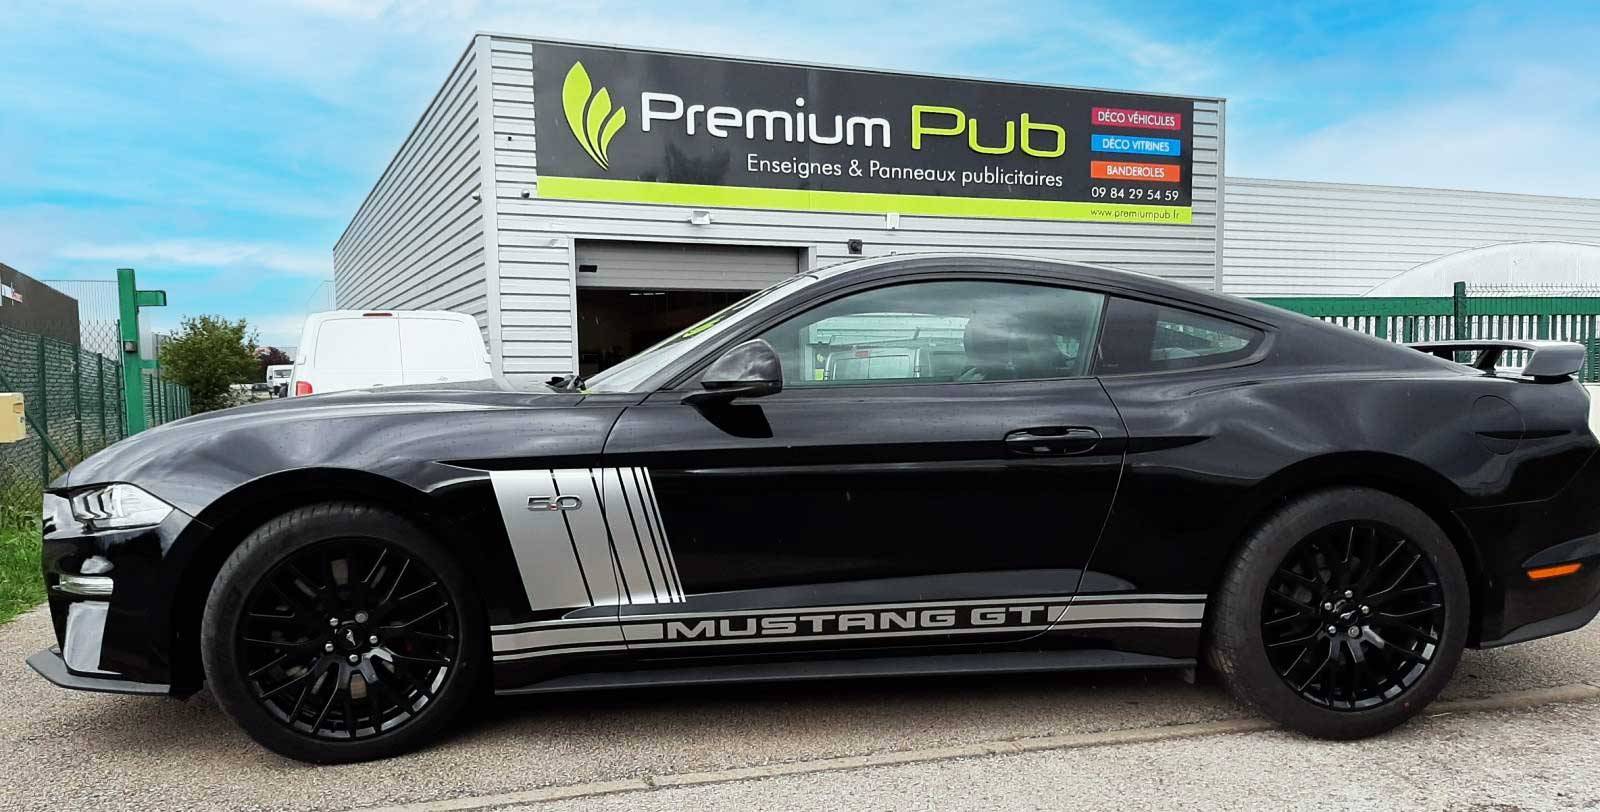 Décoration stickers adhésifs wrapping Ford Mustang GT Premium Pub à Arnas en calade dans le Beaujolais